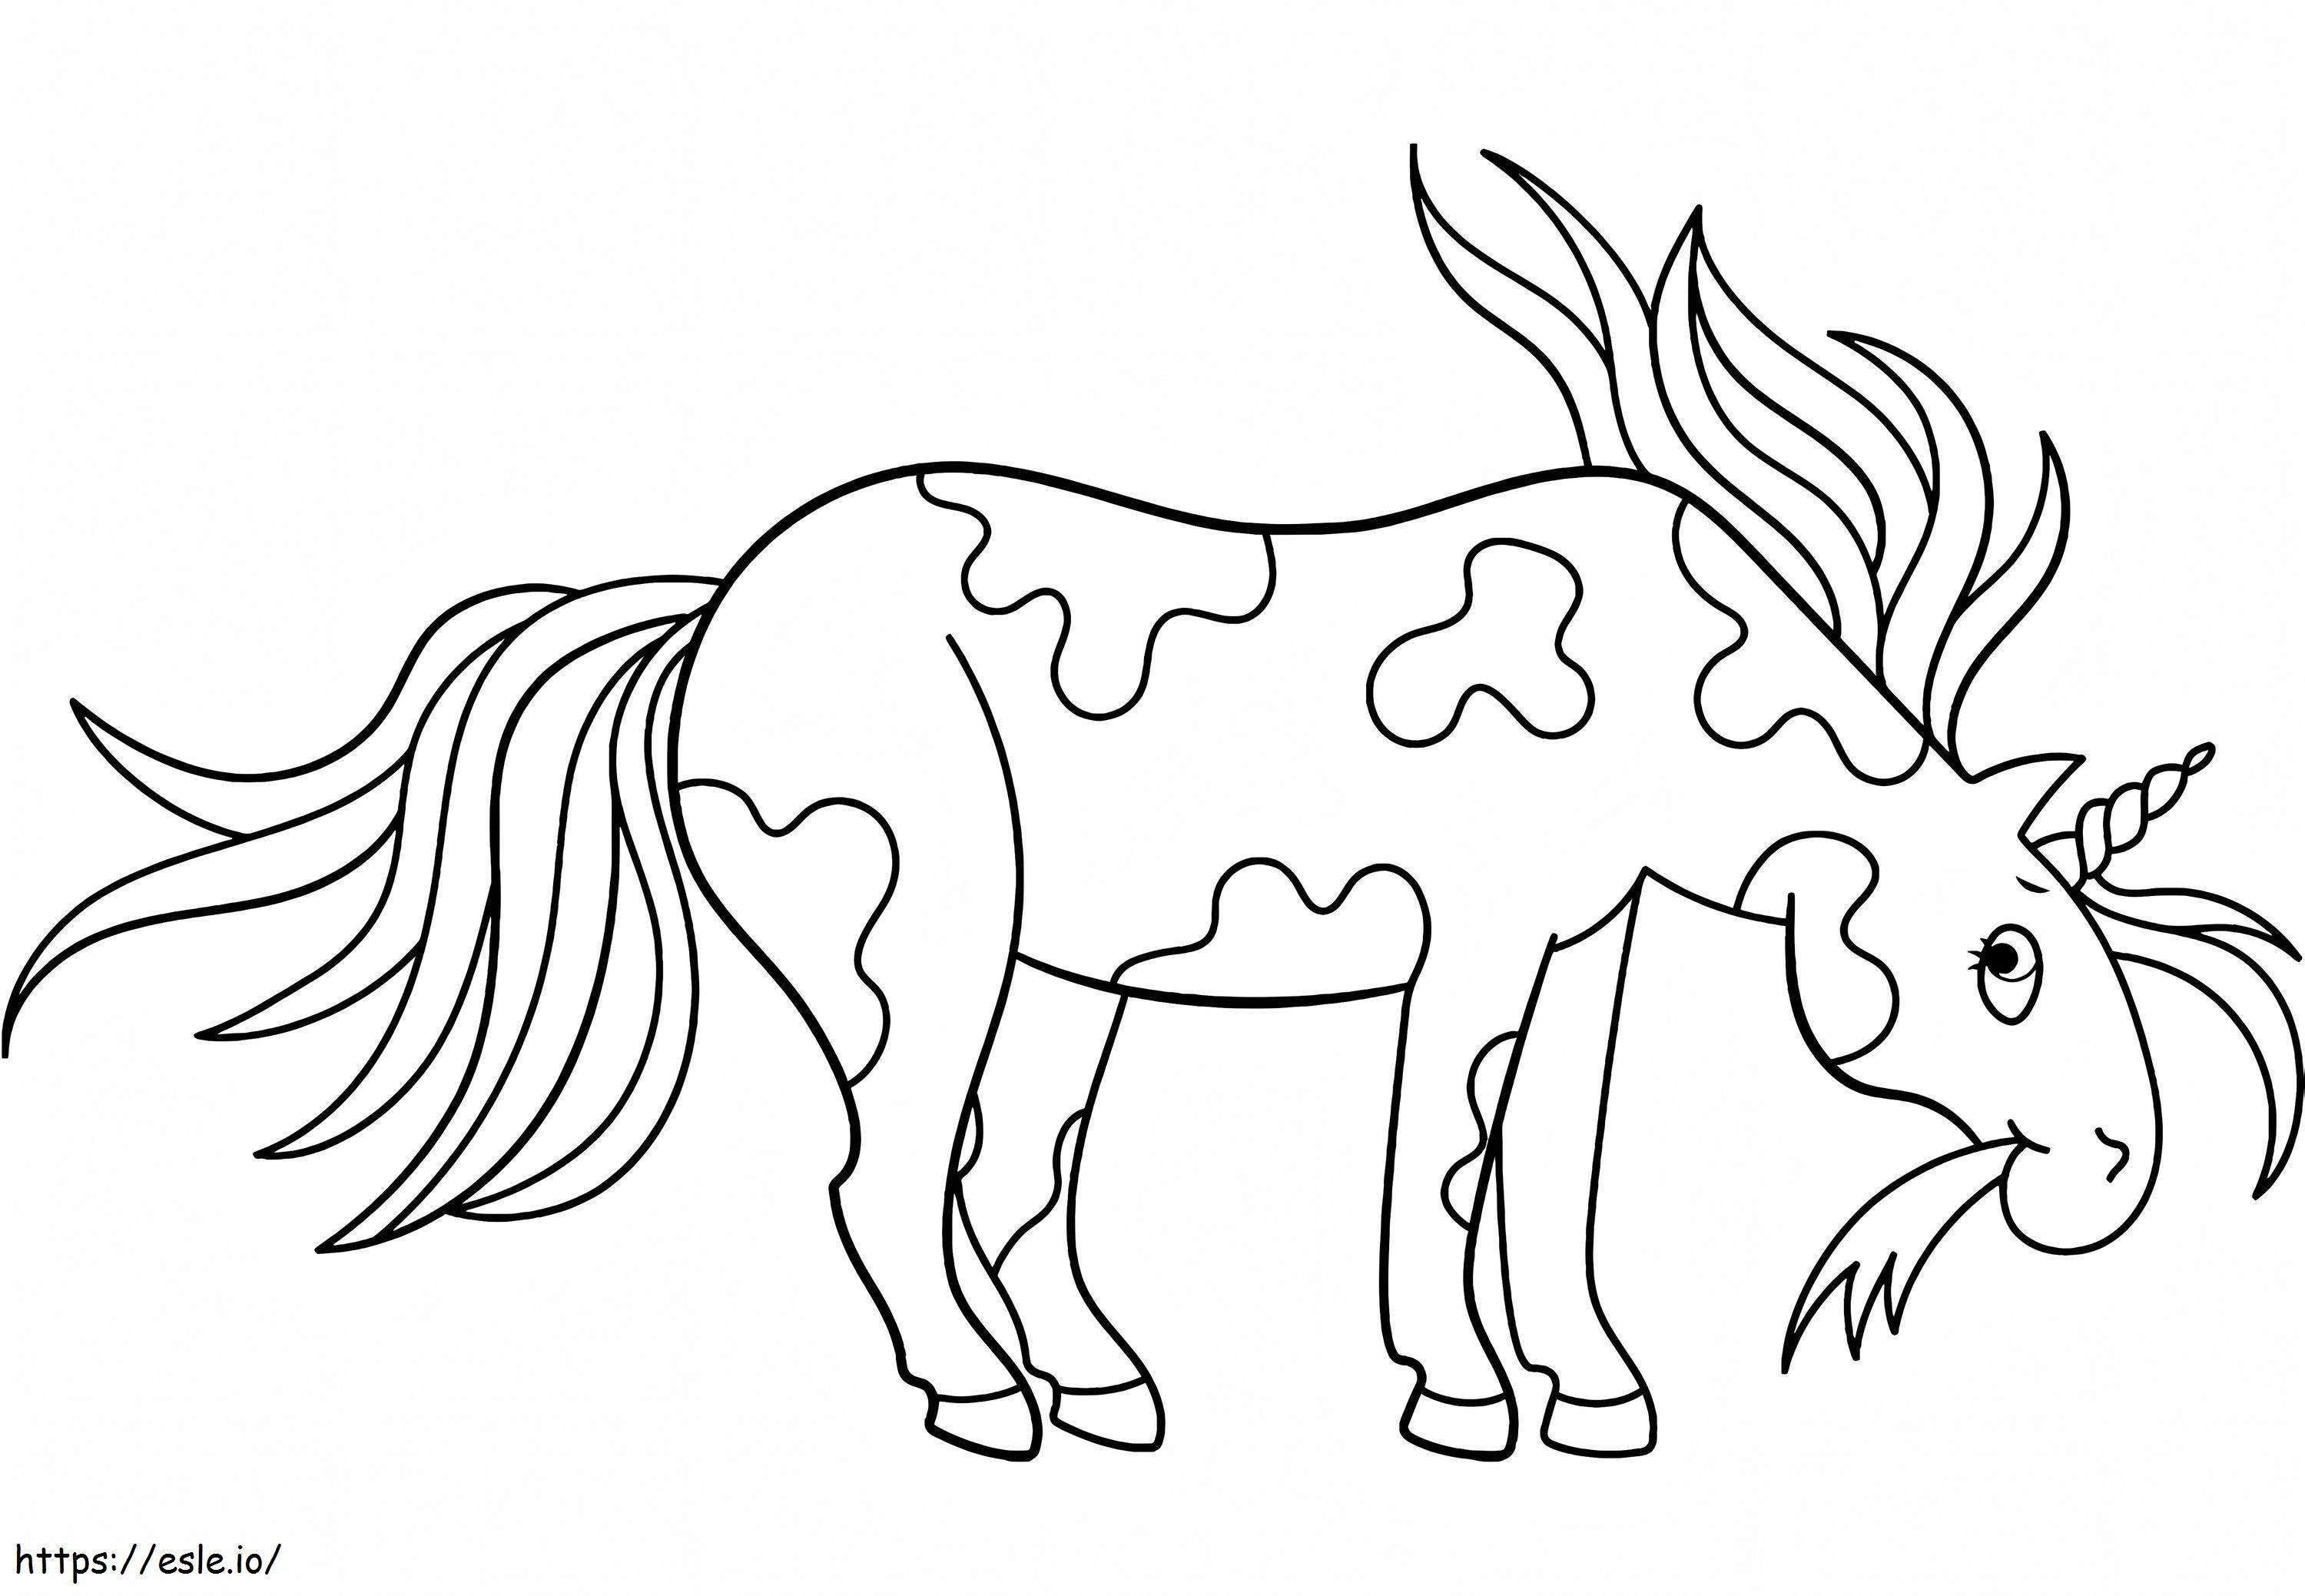 Unicornio comiendo hierba para colorear